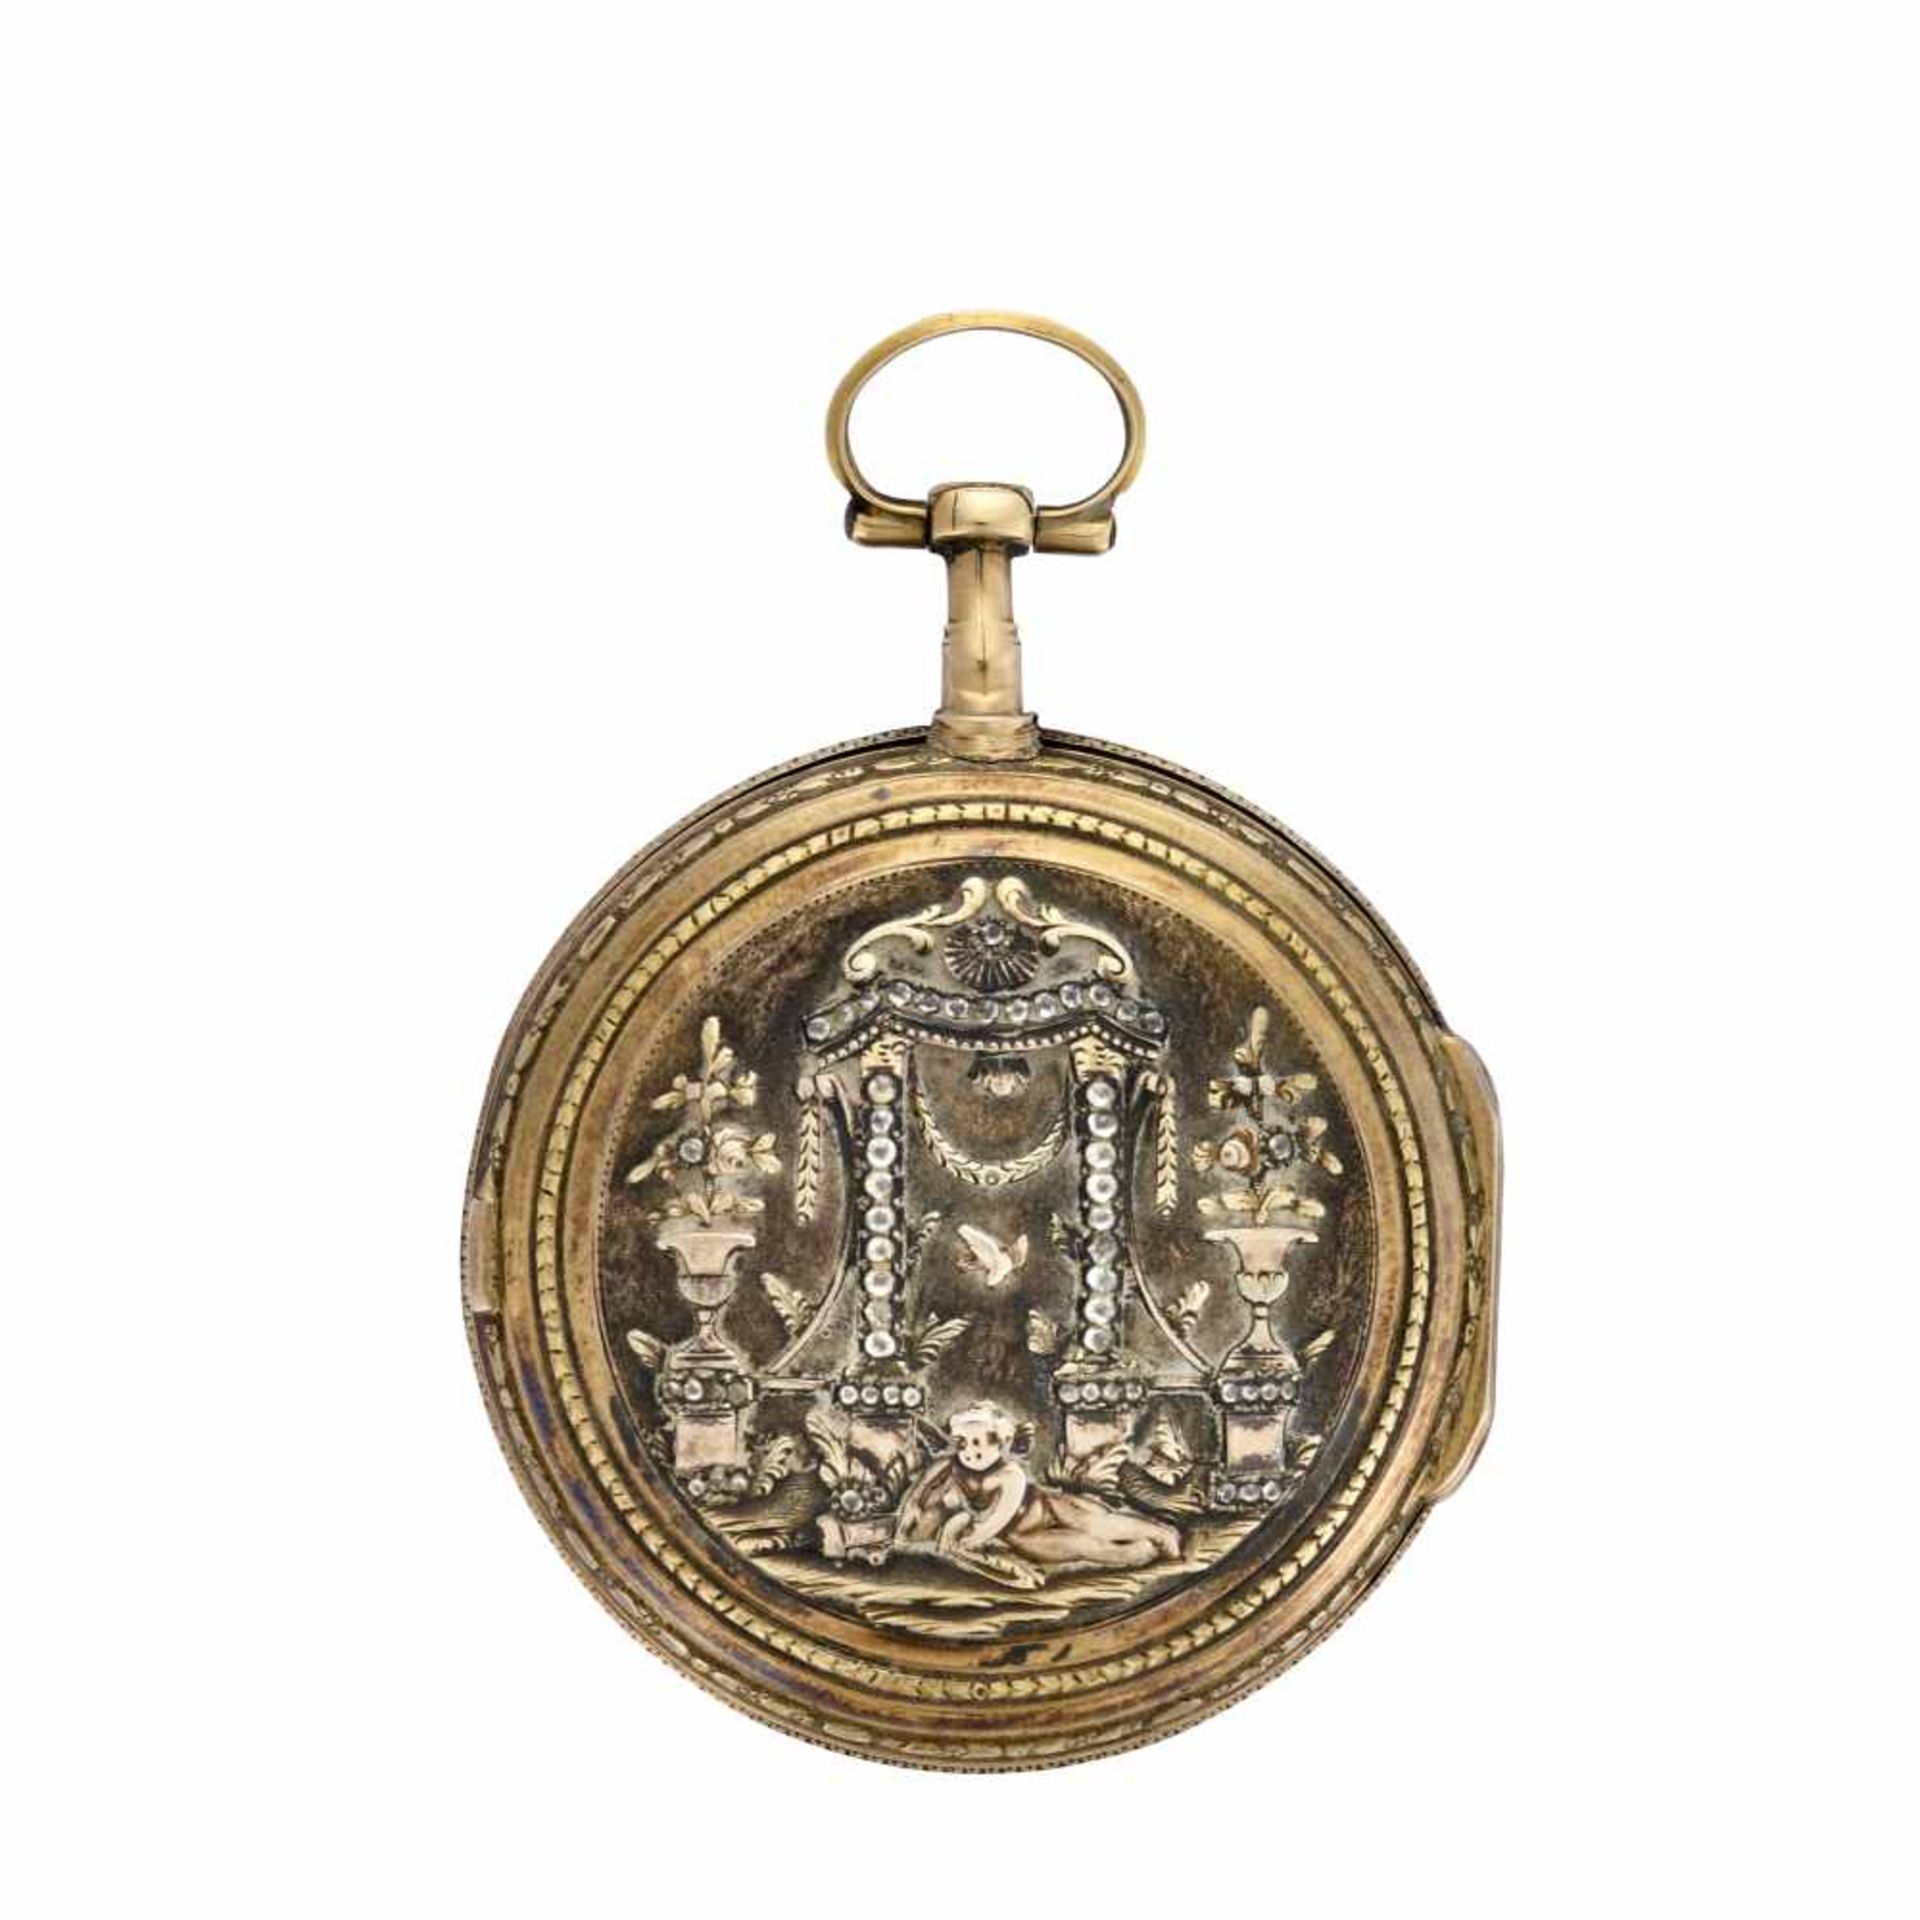 BORDIER GENEVE18K gold pocket watchLate XVIII/early XIX centuryKey-wind movementWhite enamel dial - Image 2 of 2